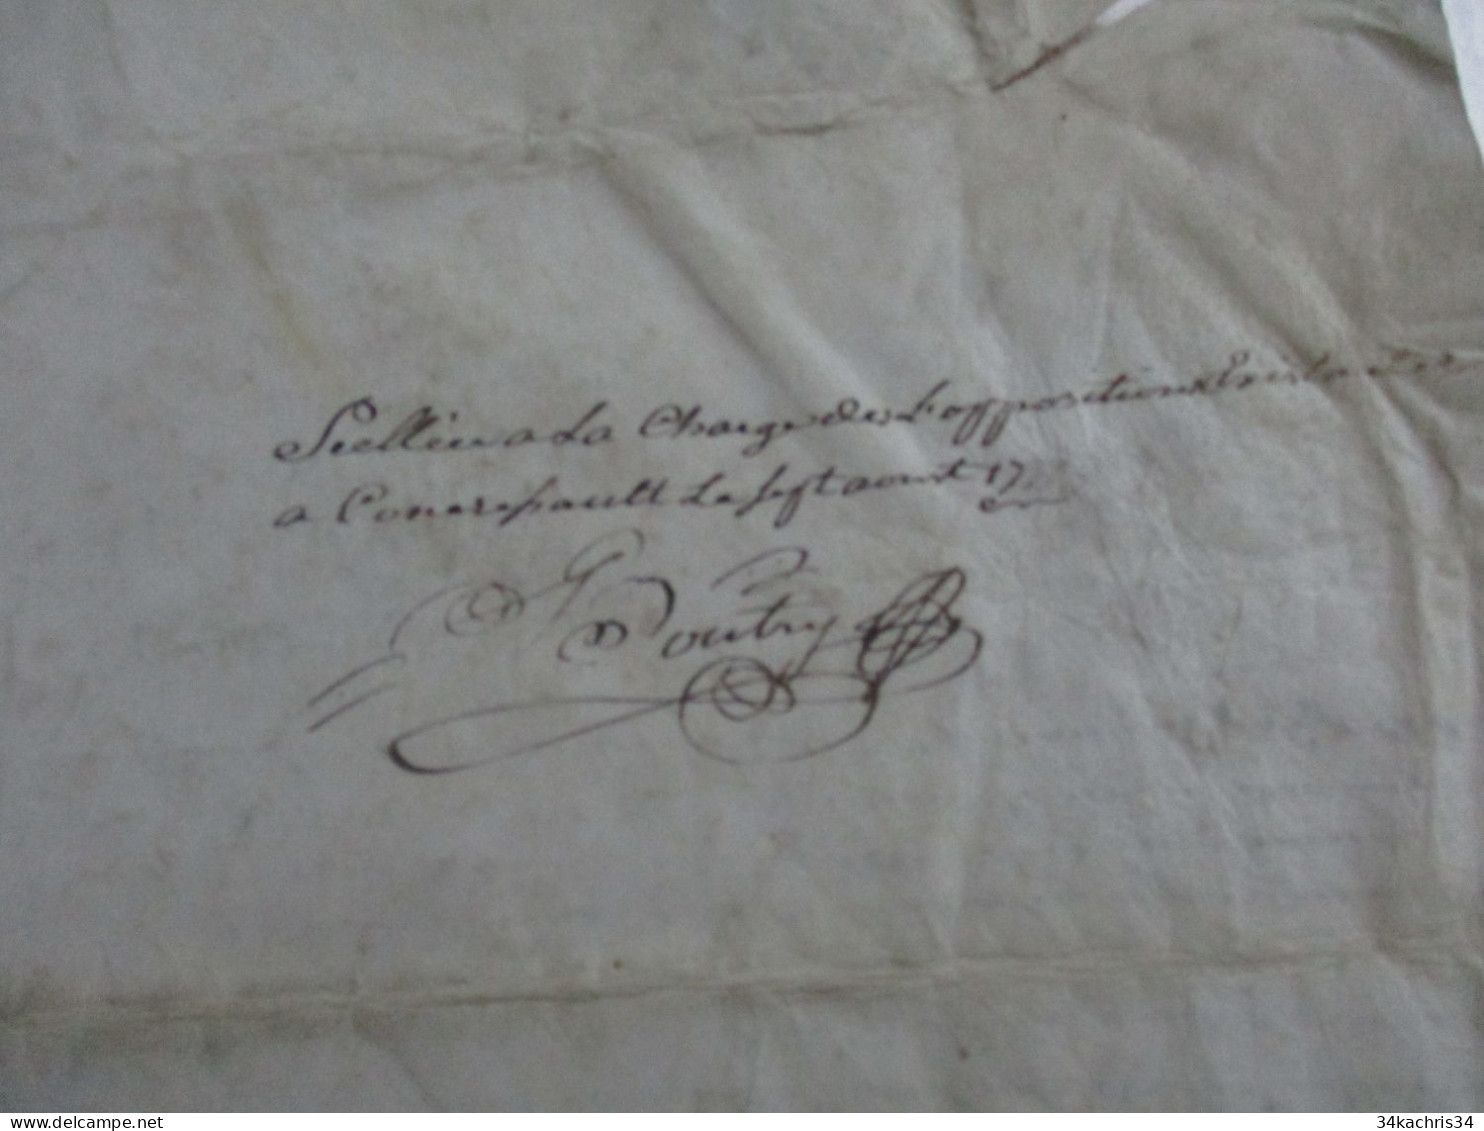 1777 pièce signée BOUTRY avec sceau généralité de Bourges Aubigny Affaires de rentes après adjudication à lire